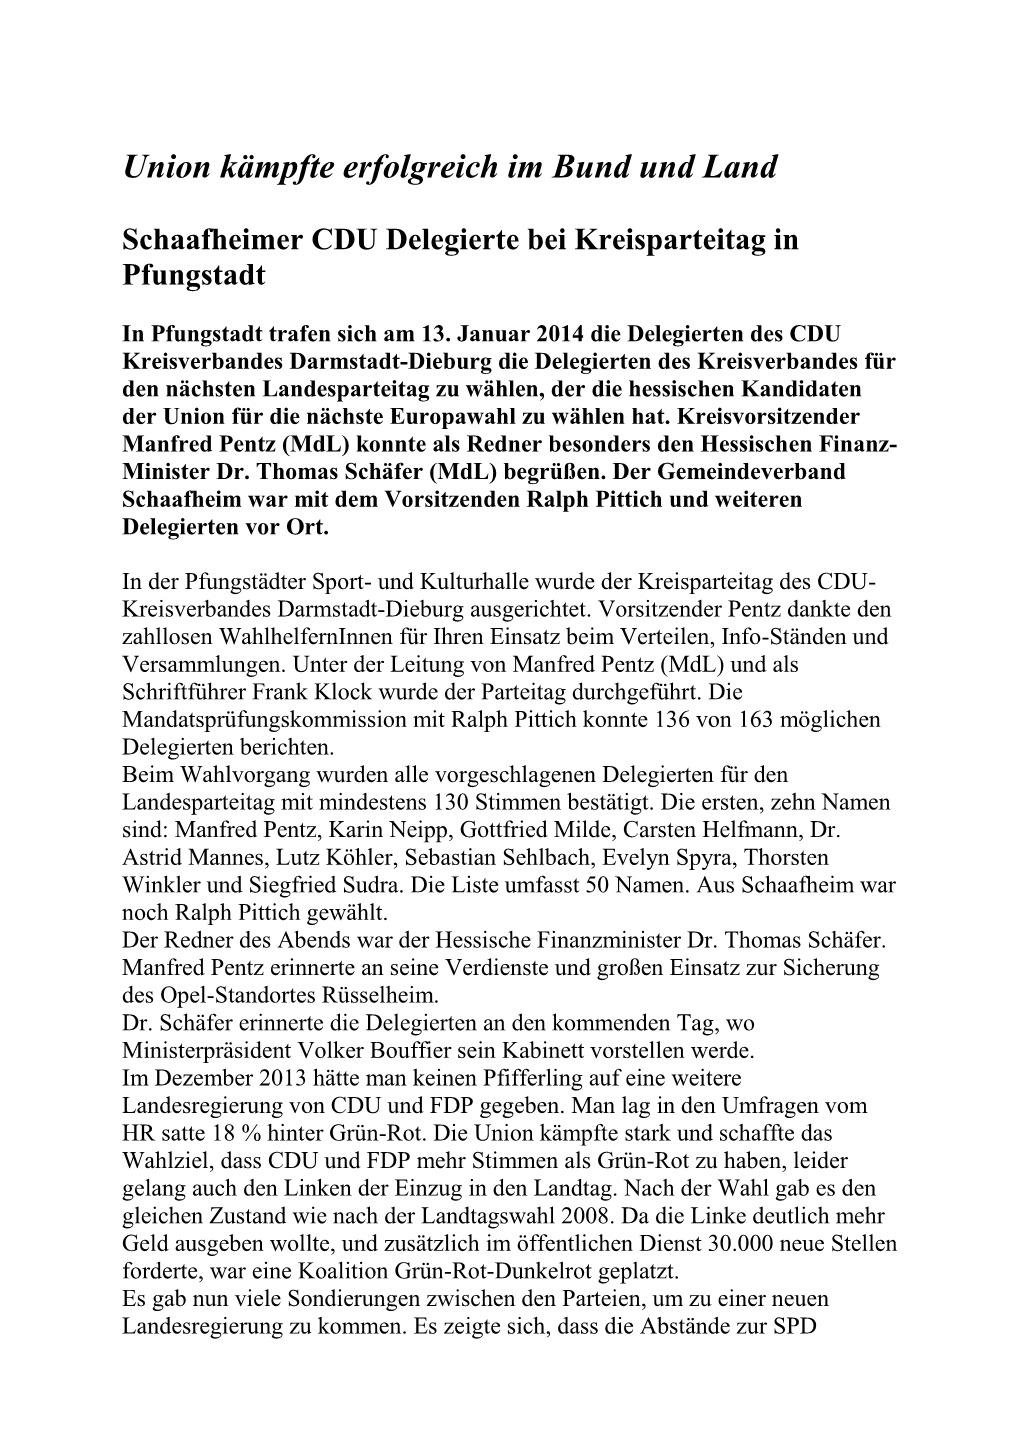 Pressemitteilung / CDU Gemeindeverband Schaafheim / 21